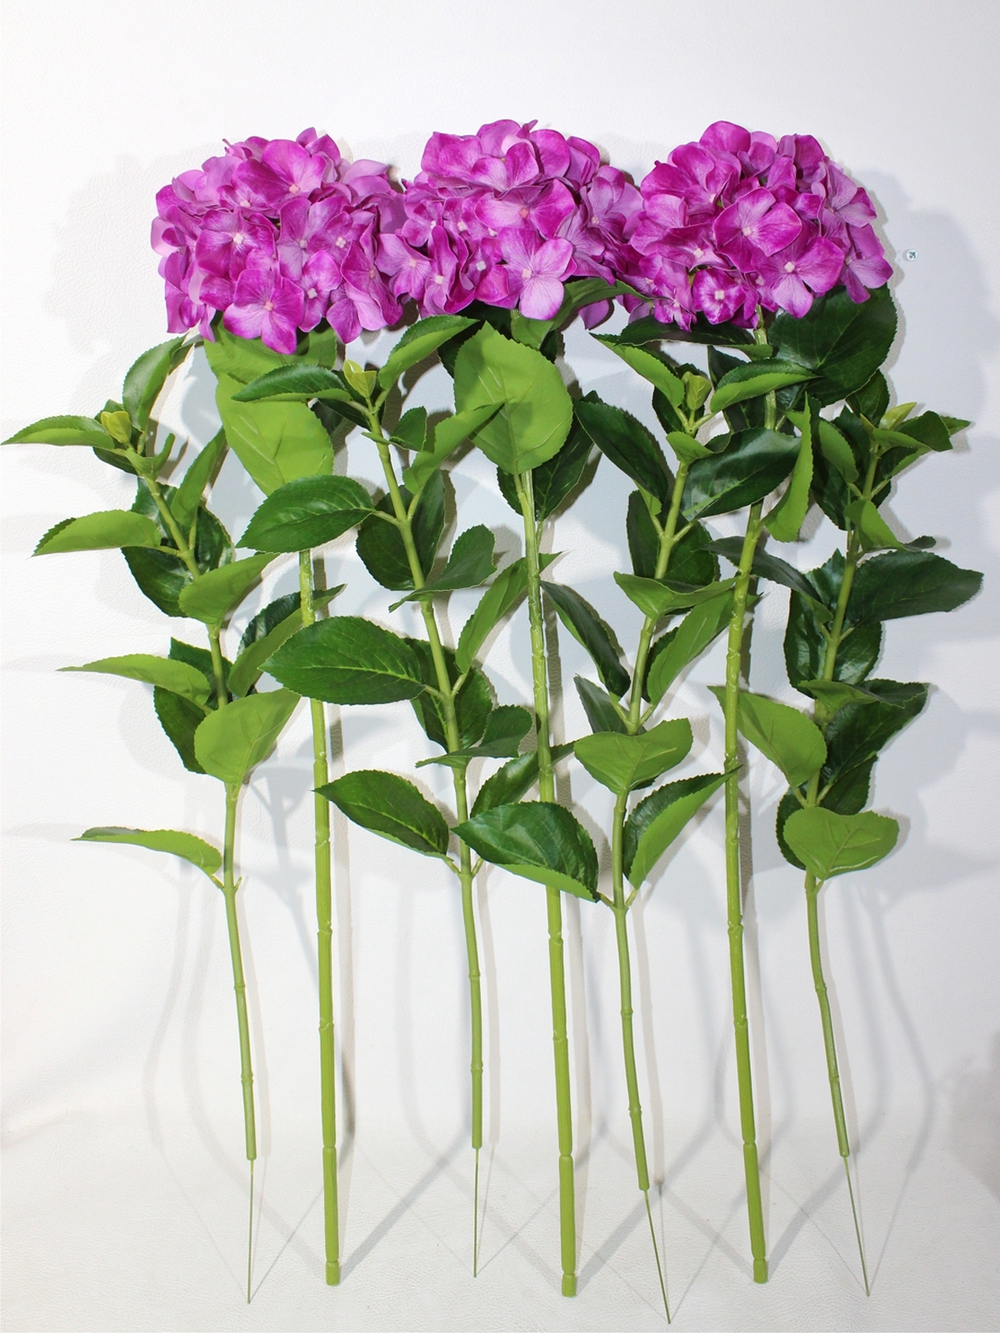 Гортензия искусственная лиловая латекс 70см для вазы